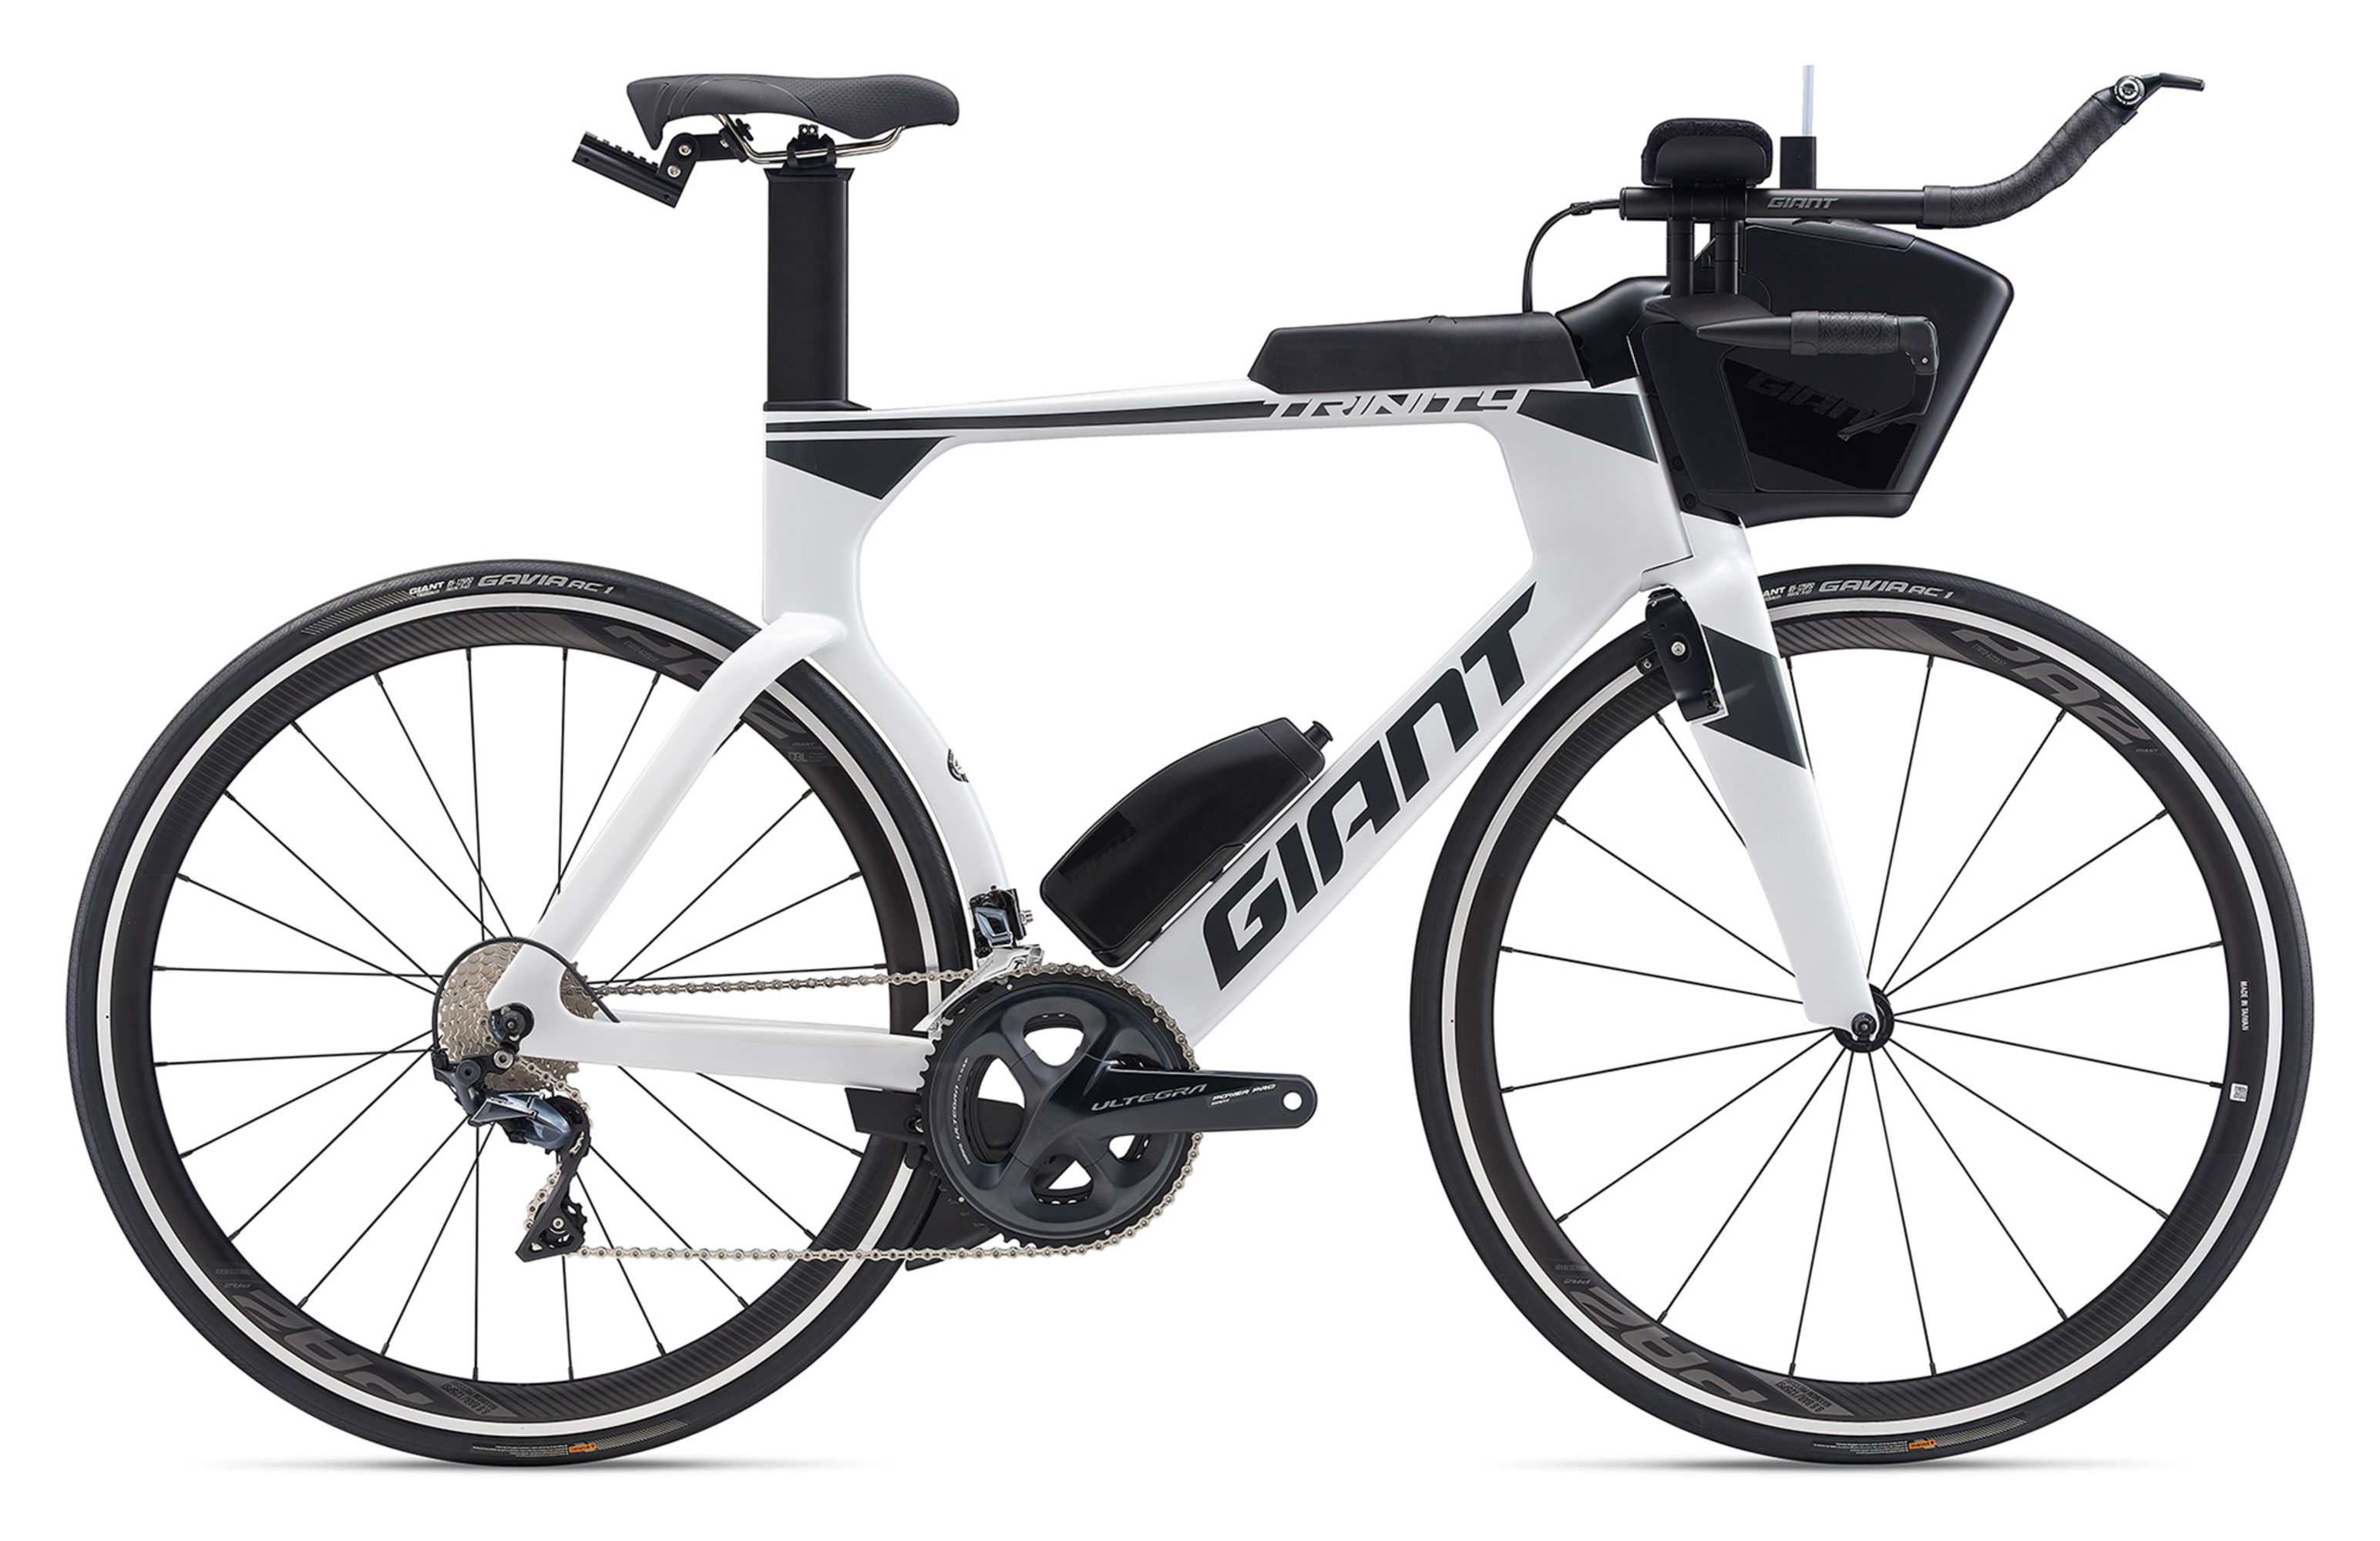  Велосипед Giant Trinity Advanced Pro 2 2020